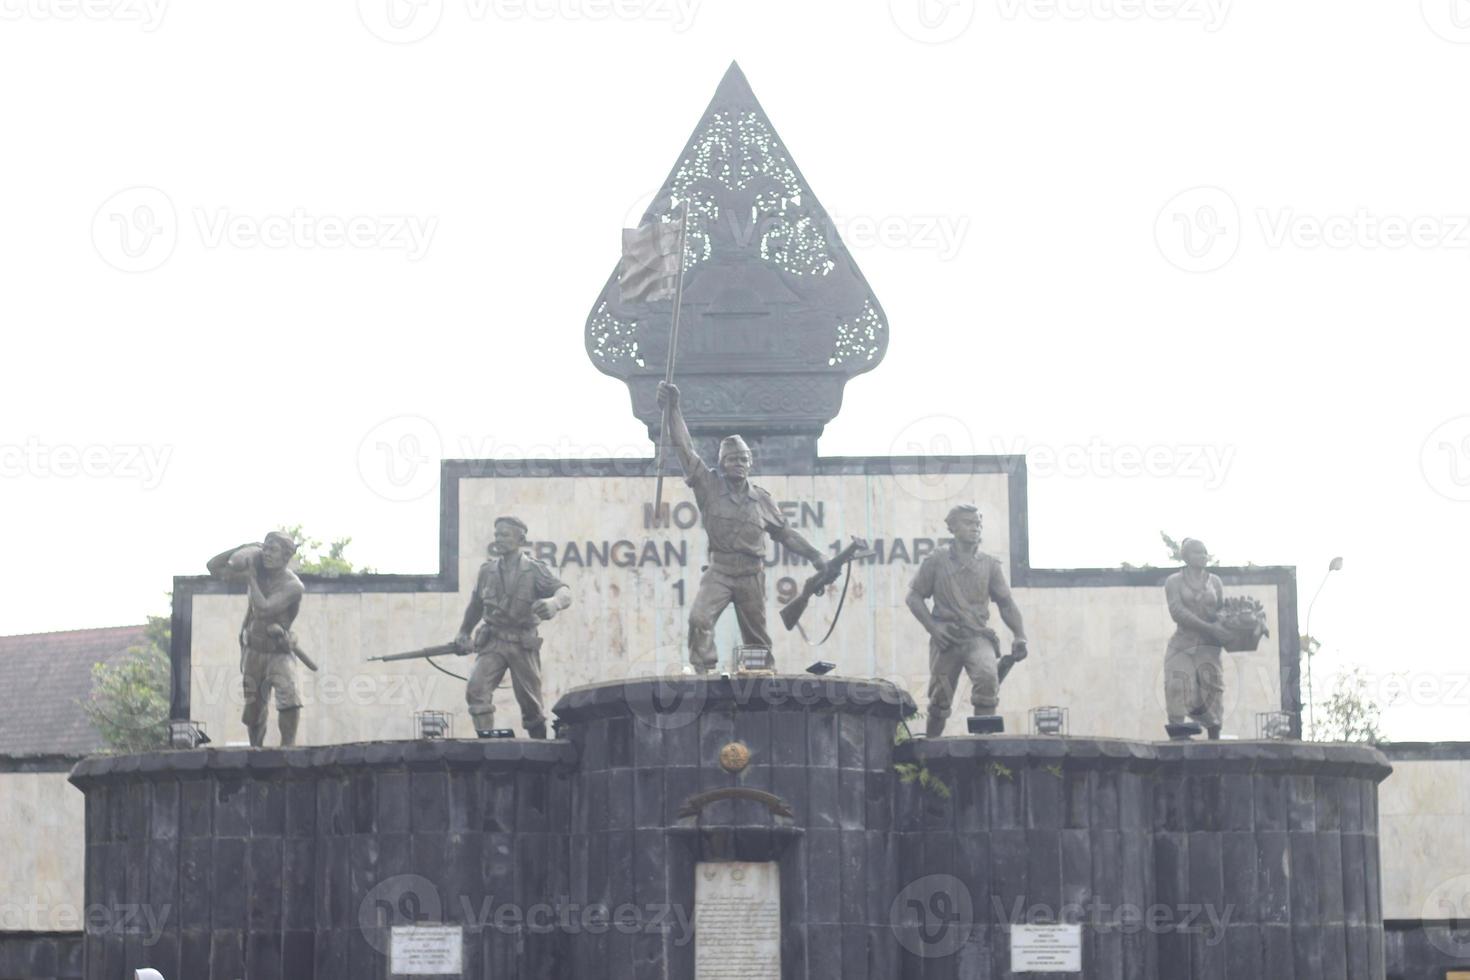 un' marzo 1 generale attacco monumento o monumento serangan ehm 1 maret foto